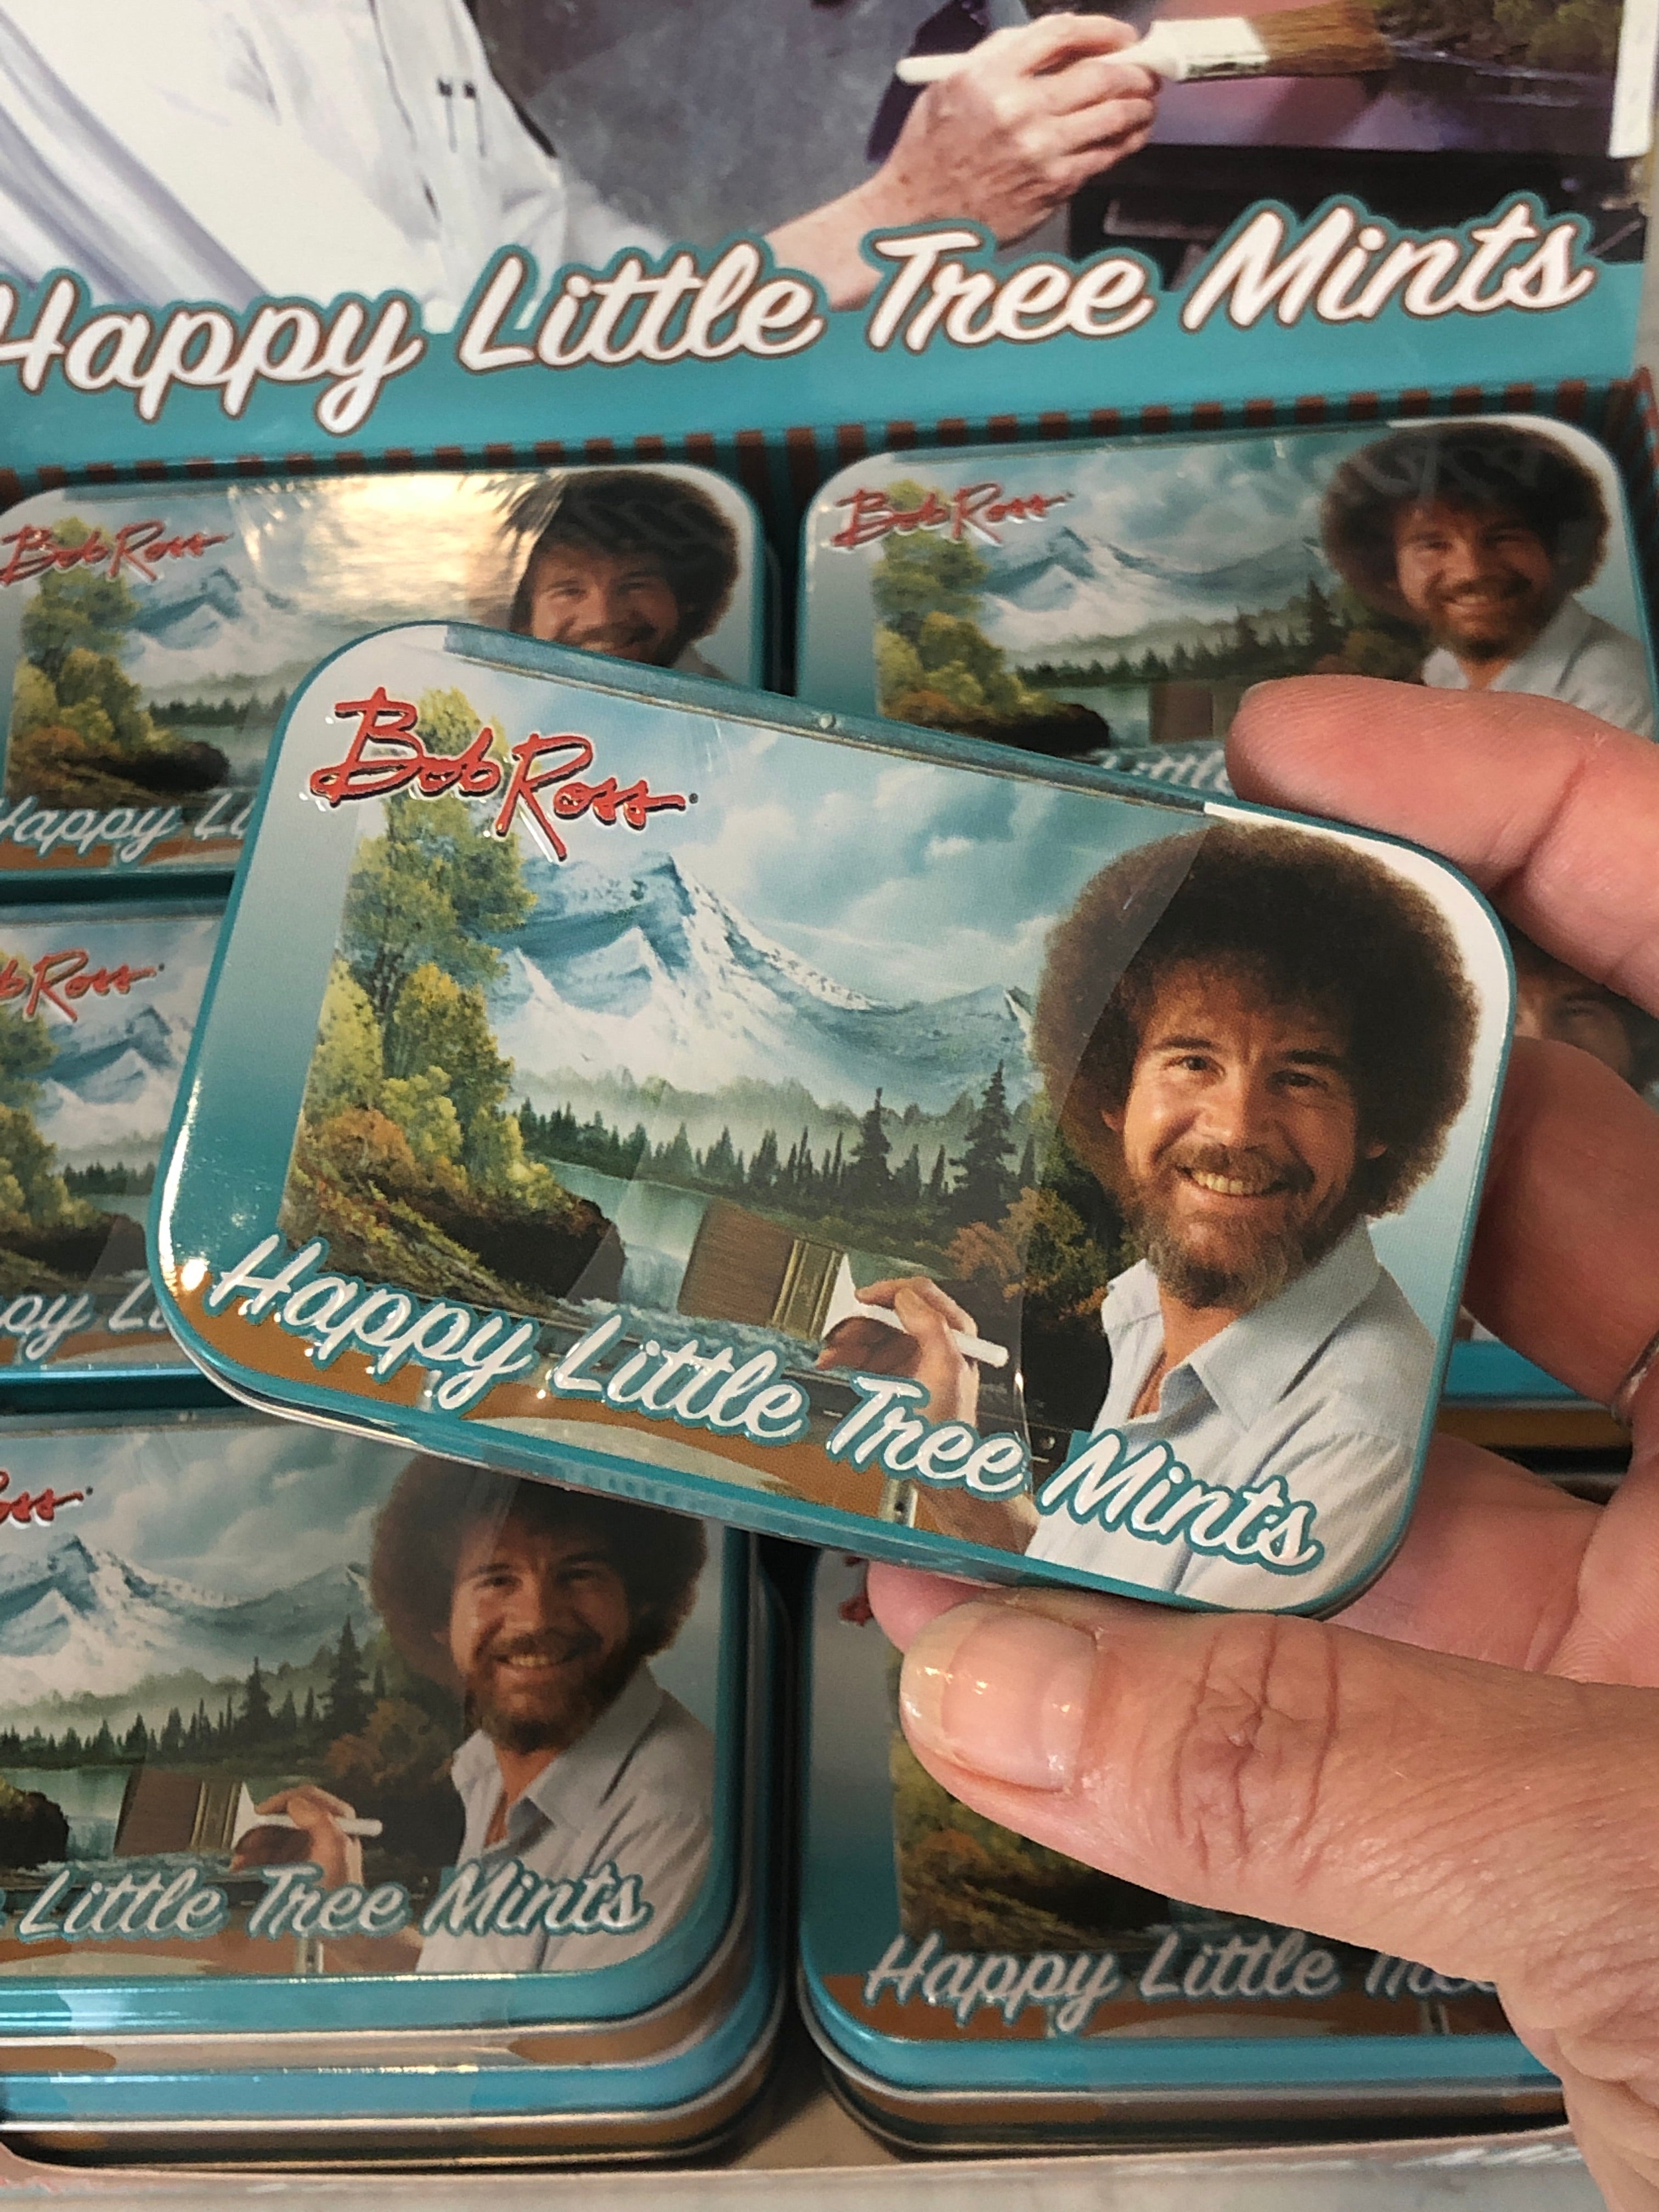 Bob Ross - Happy Little Tree Mints